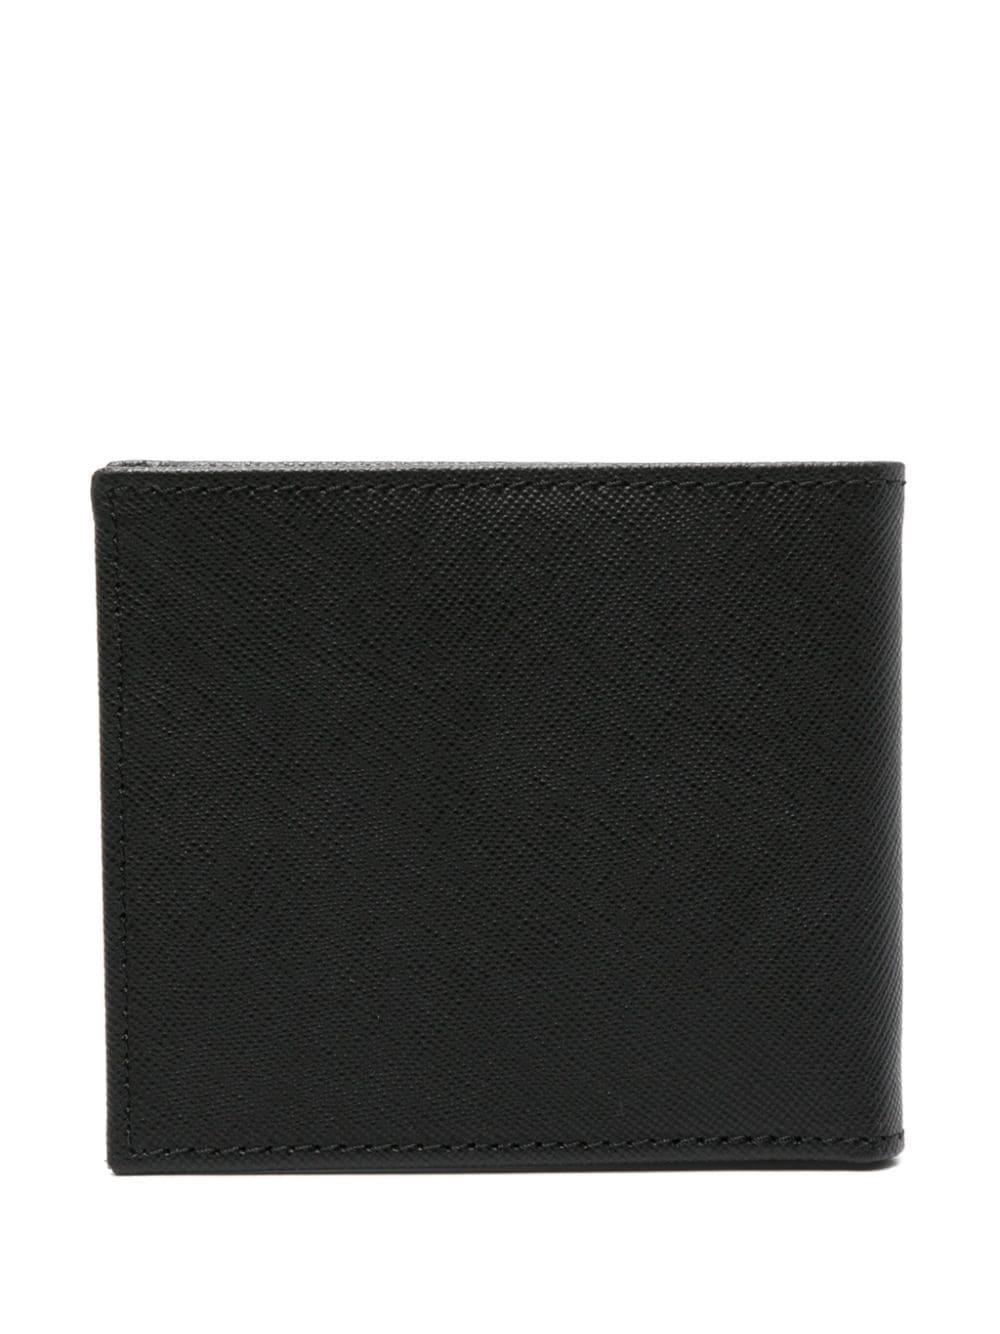 Corneliani bi-fold grained leather wallet - Black